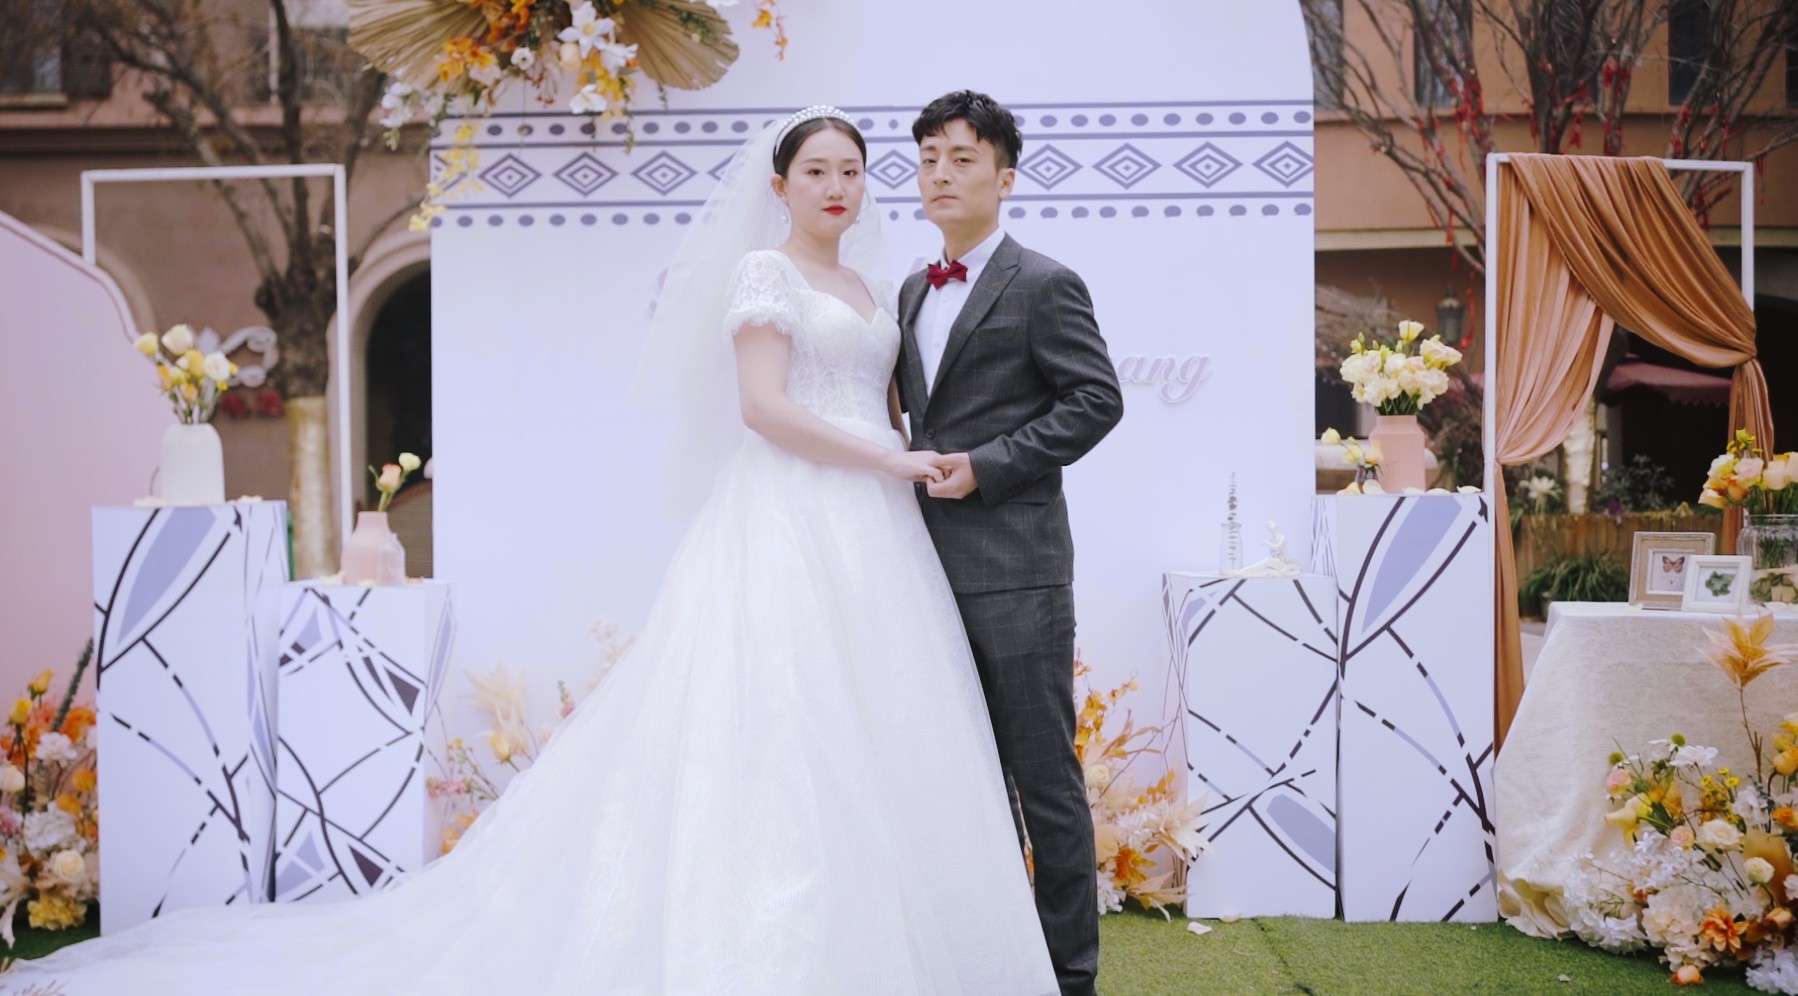 Chong + Xiang | Jan 24 2021婚礼短片